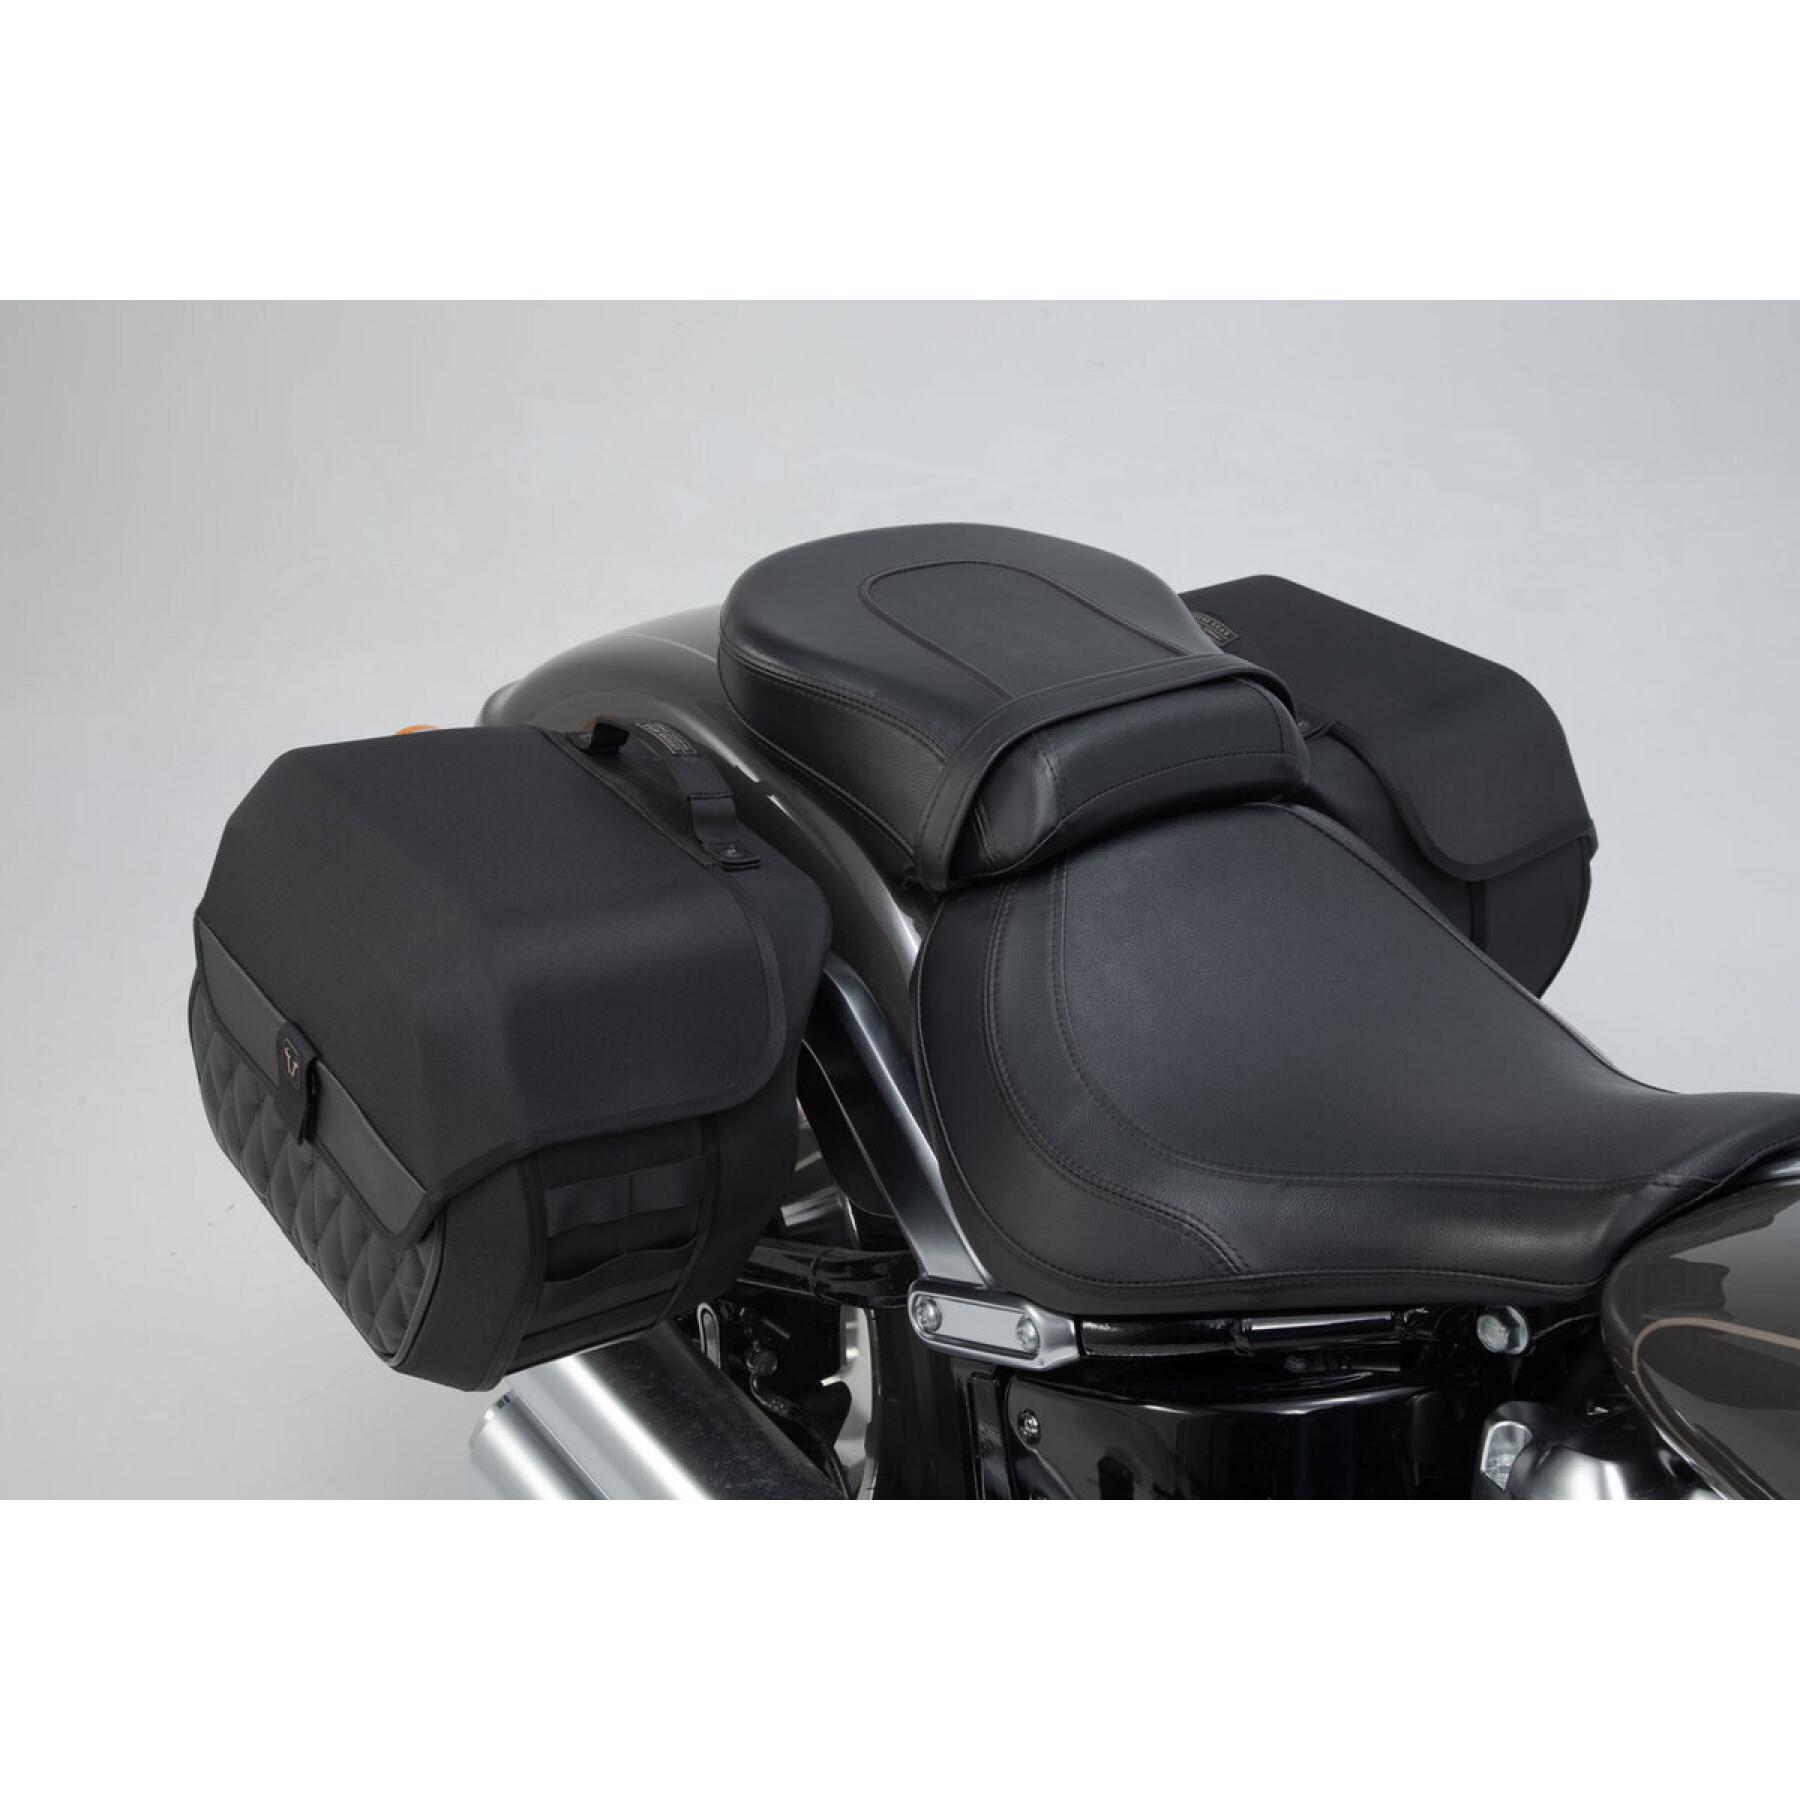 Système de sacoche latérale latérale moto SW-Motech LH2/LH1 Legend Gear 25,5/19,5 l. Harley Davidson Softail Fat Boy (17-)